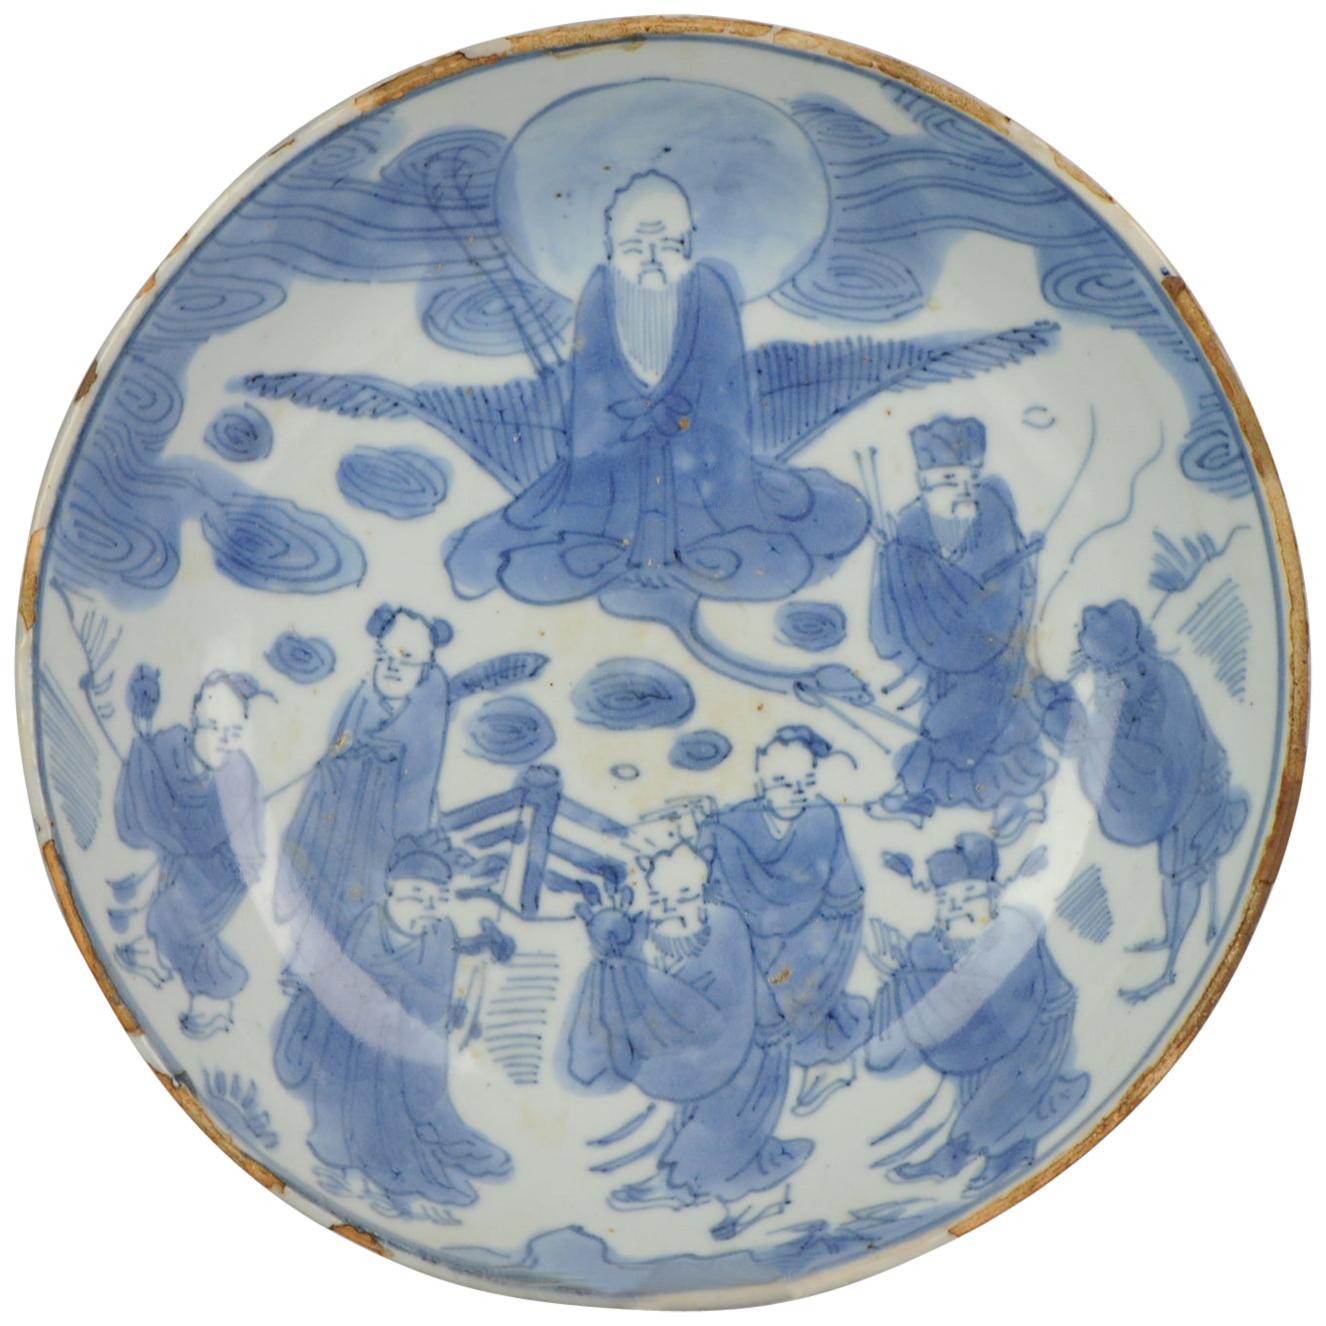 Ancienne assiette Kosometsuke en porcelaine chinoise ancienne, vers 1600-1640, Shou Lao 8 Immortals